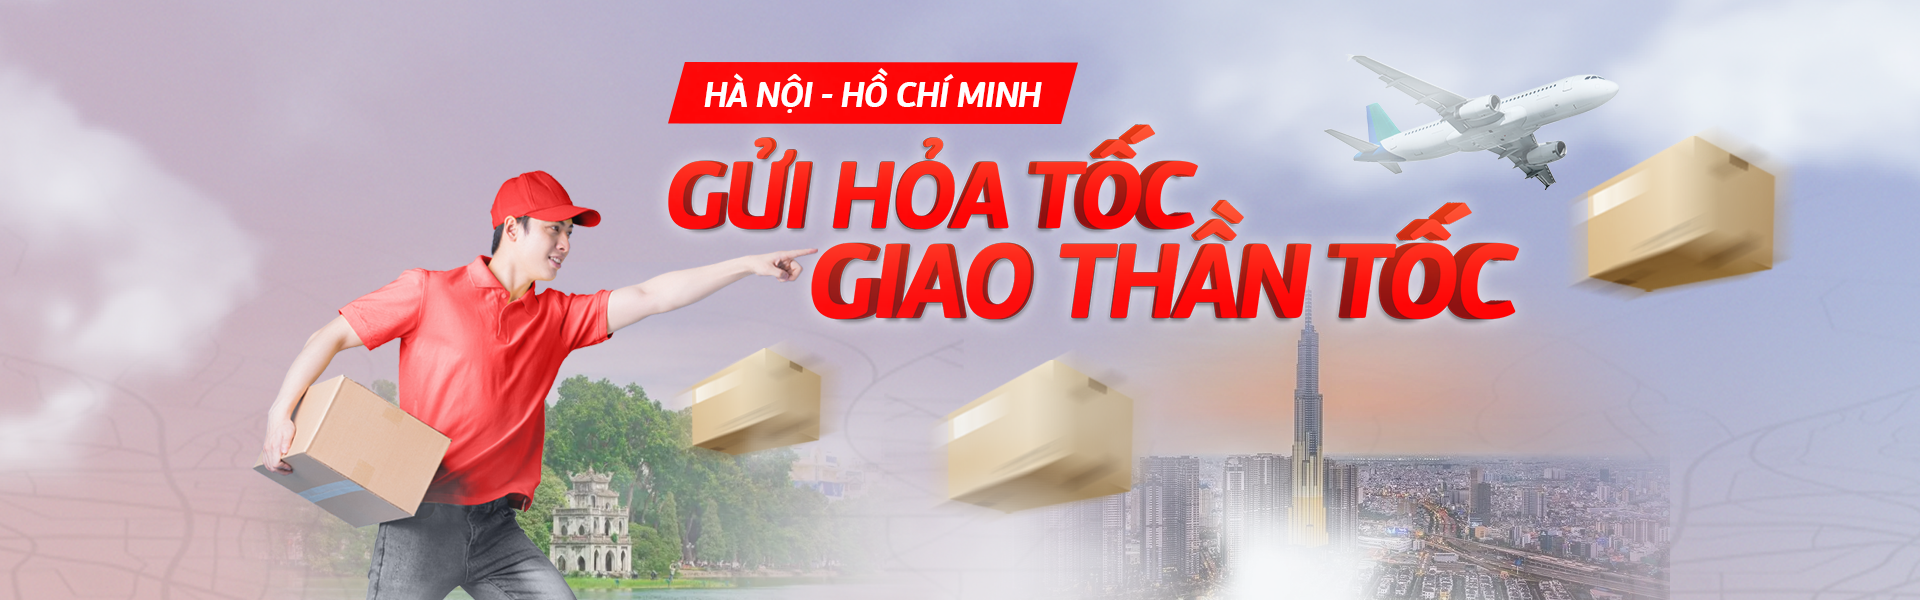 Gửi hàng Hà Nội - Hồ Chí Minh nhận ngay trong ngày với dịch vụ chuyển phát Hỏa  tốc Viettel Post - Viettel Post